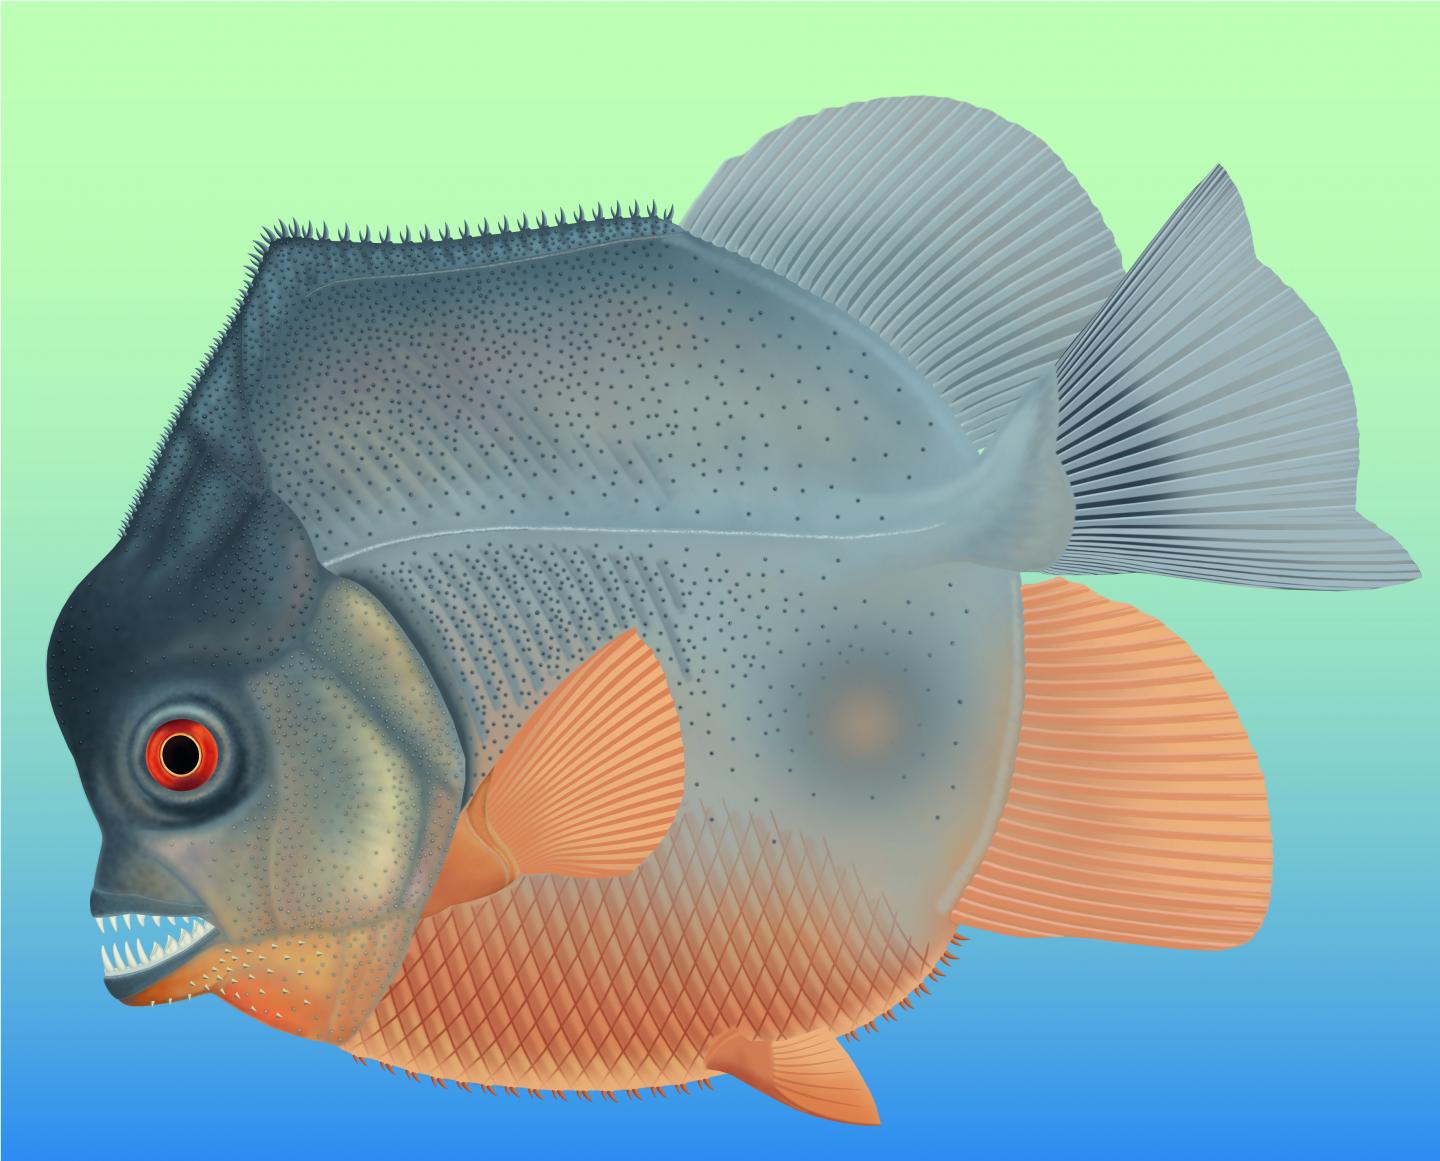 Piranha-Like Fish